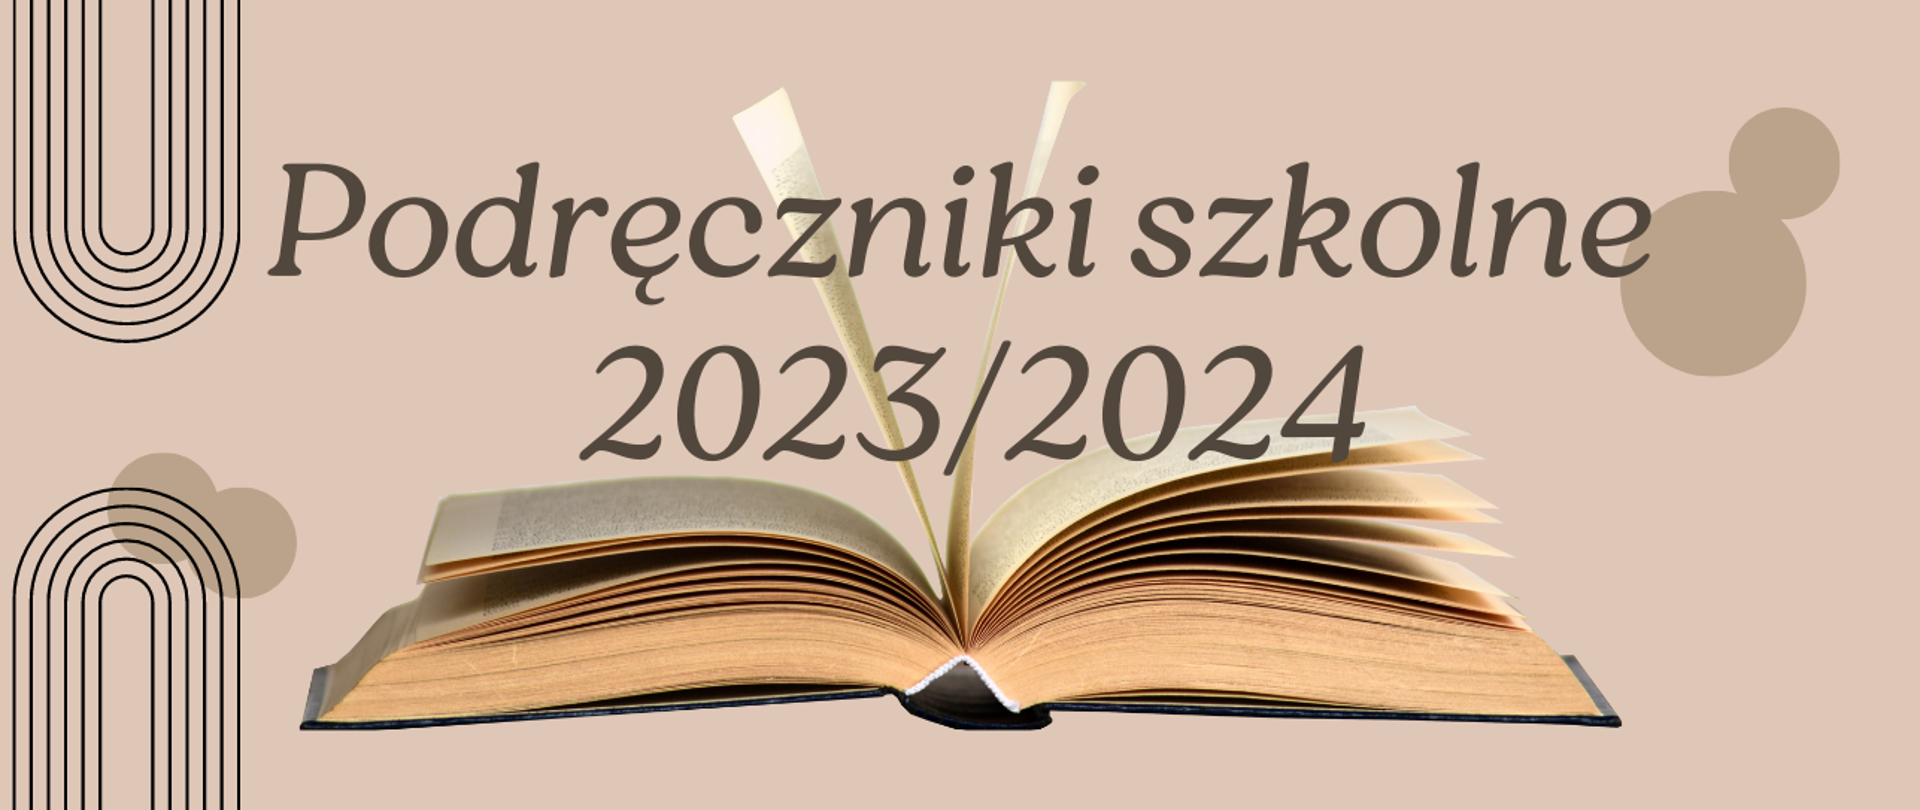 Baner zawiera napis "Podręczniki szkolne 2023/2024" w beżowobrązowych odcieniach, grafika przedstawia otwartą książkę. 